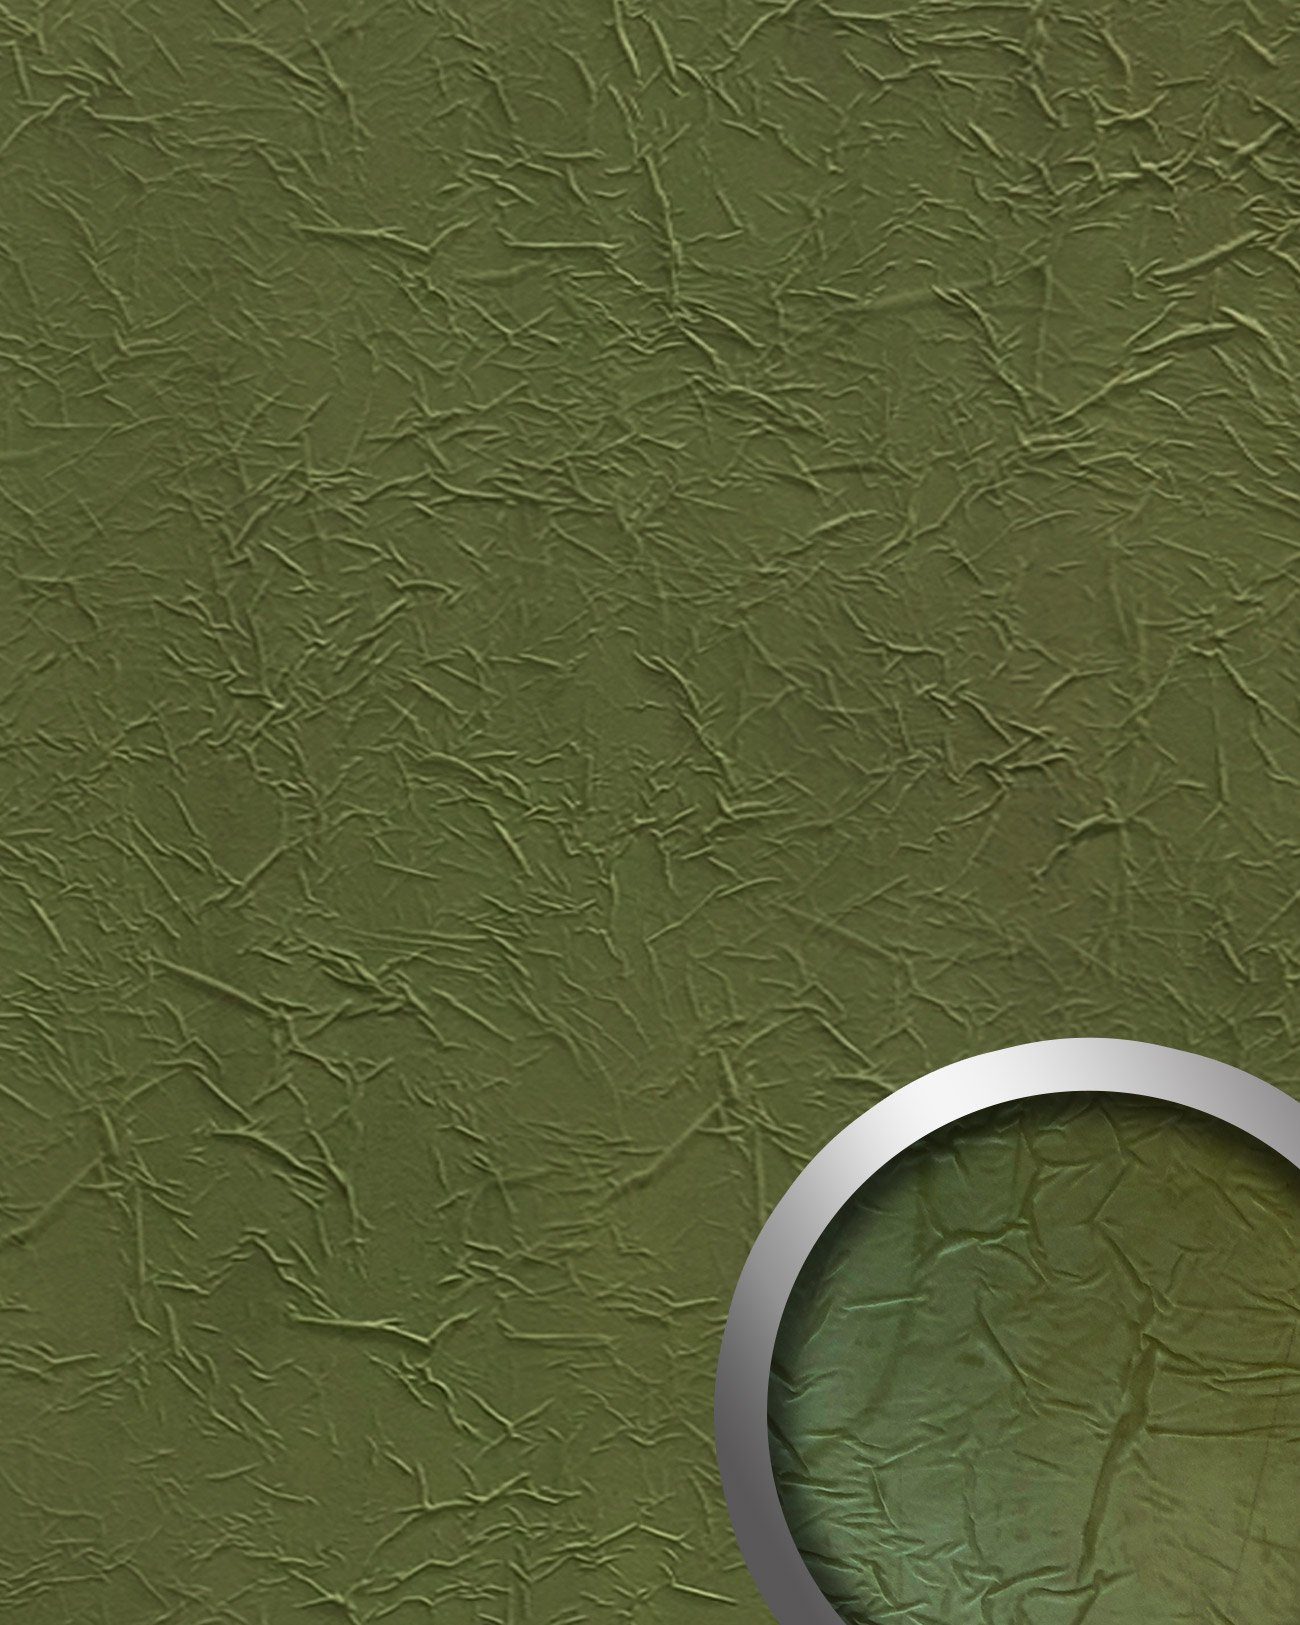 Wallface Dekorpaneele 22735-NA, BxL: 100.5x261.3 cm, 2.63 qm, (Dekorpaneel, 1-tlg., Wandverkleidung in Leder-Optik) grün, matt, samtig weich